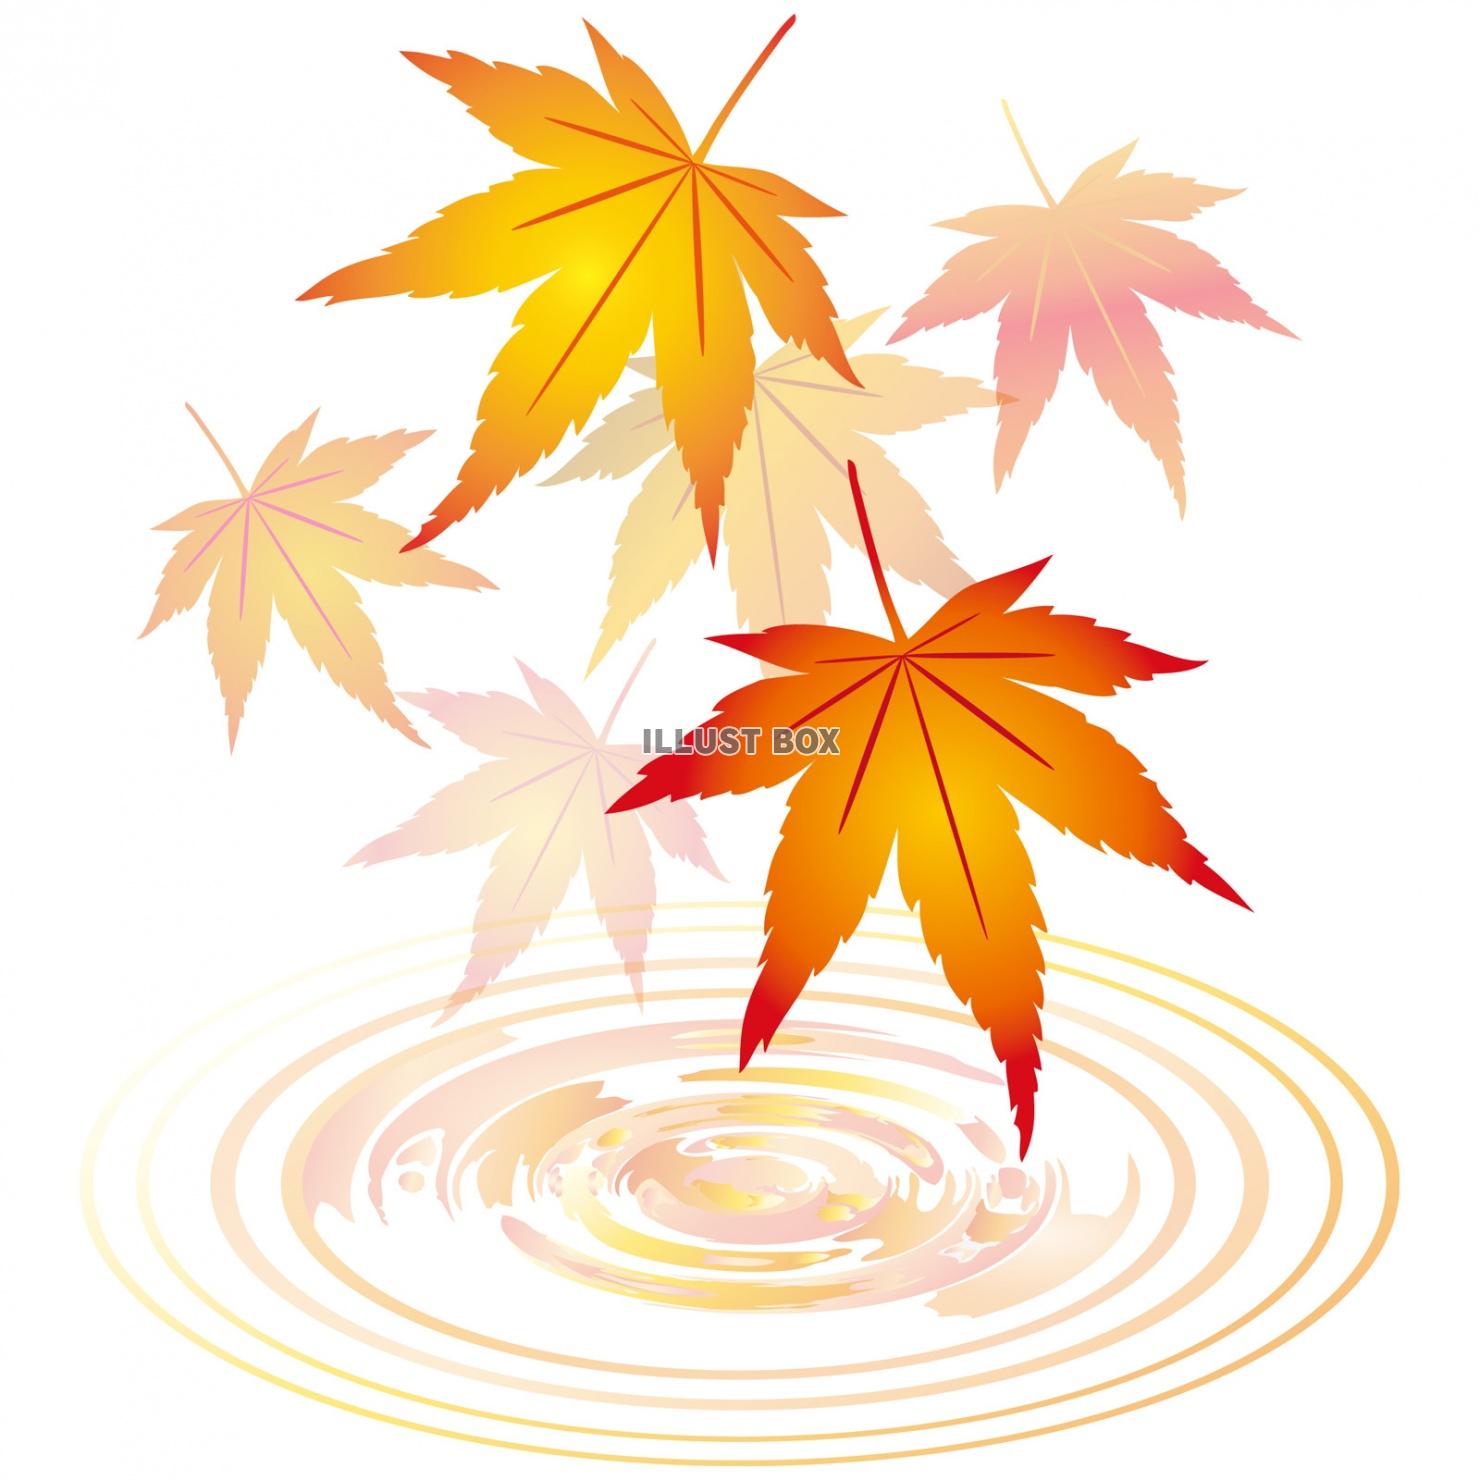 紅葉もみじ飾り装飾水面10月11月モミジ葉っぱ植物楓カエデ波...